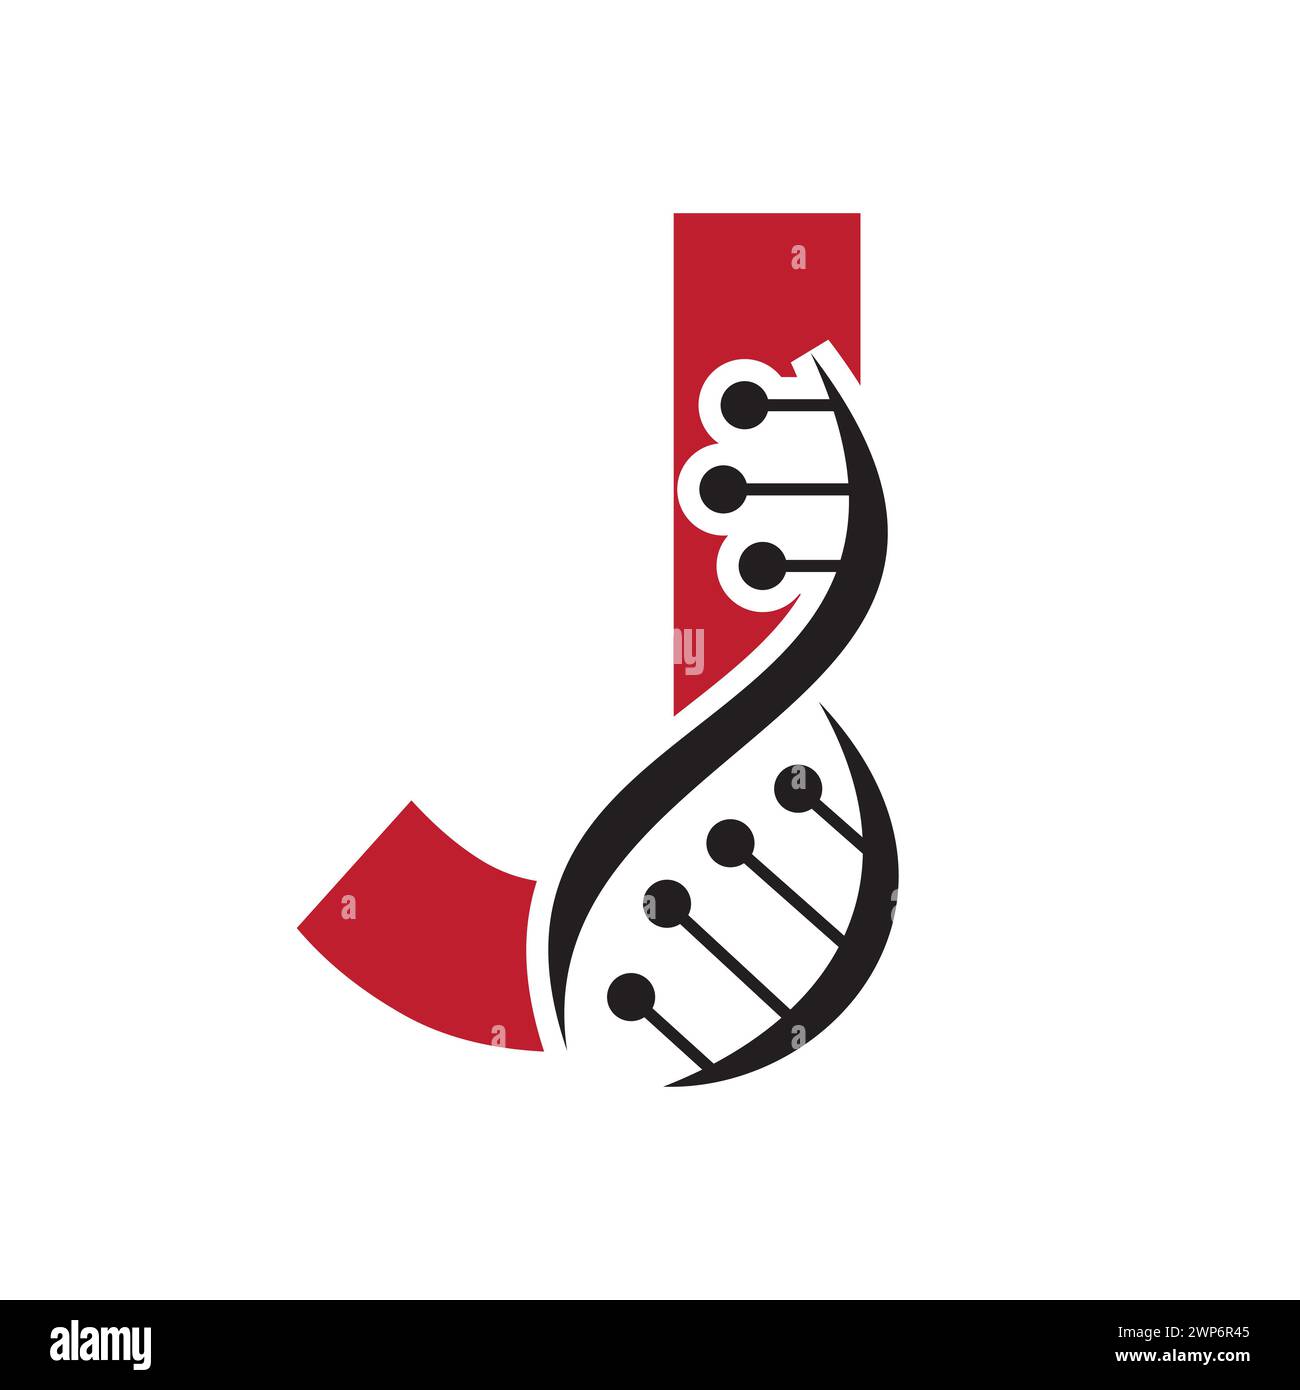 Ursprüngliches DNA-Logo auf Buchstabe J Vektorvorlage für Gesundheitssymbol Stock Vektor